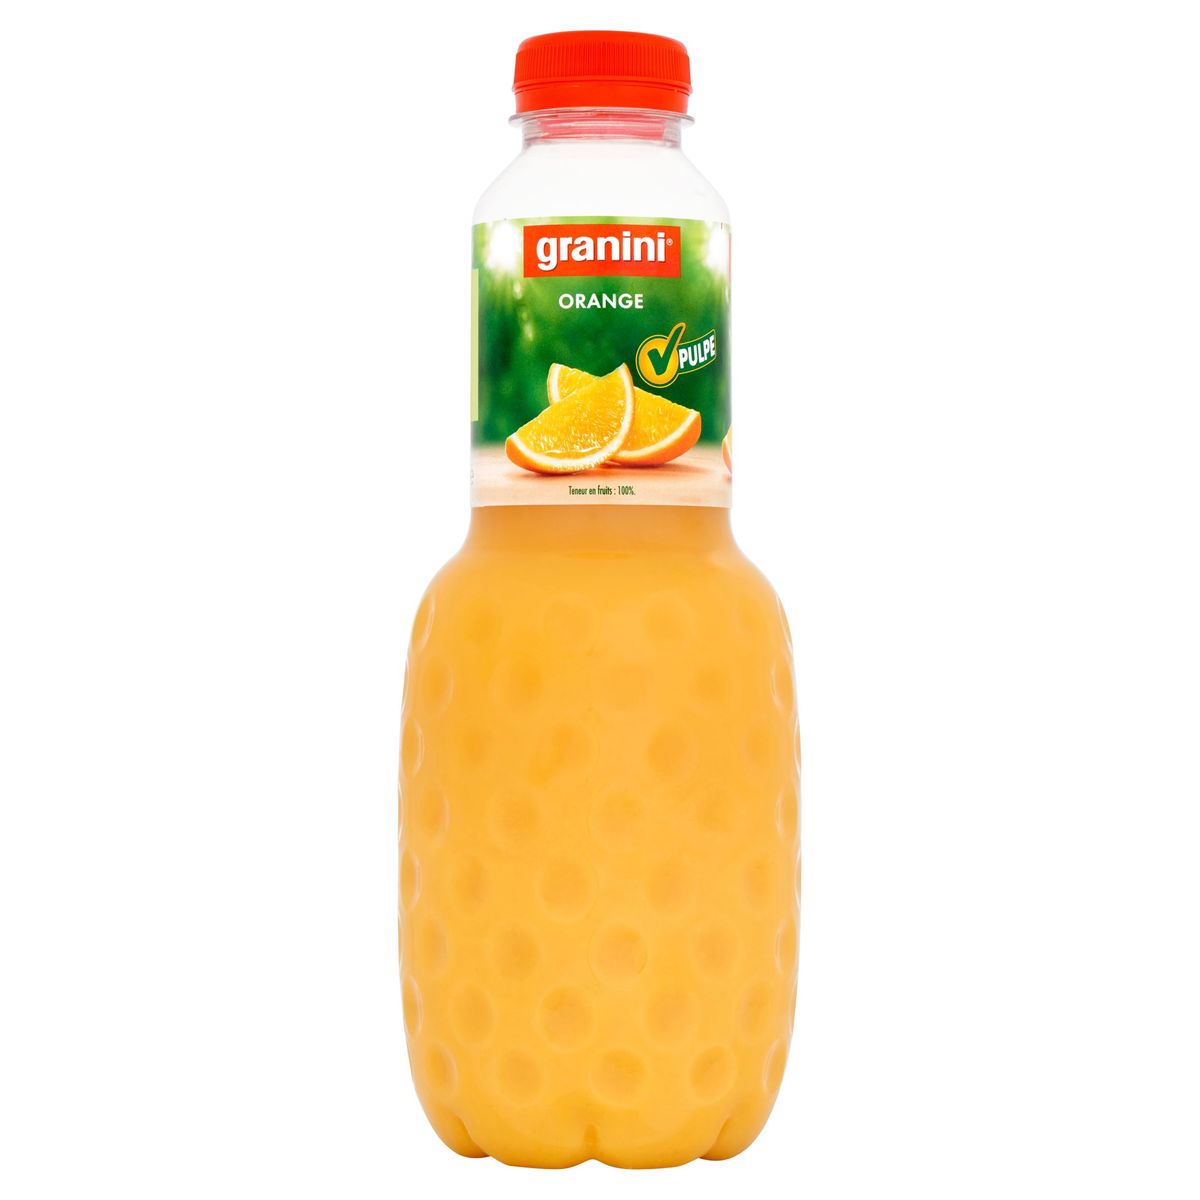 granini Orange 1 L